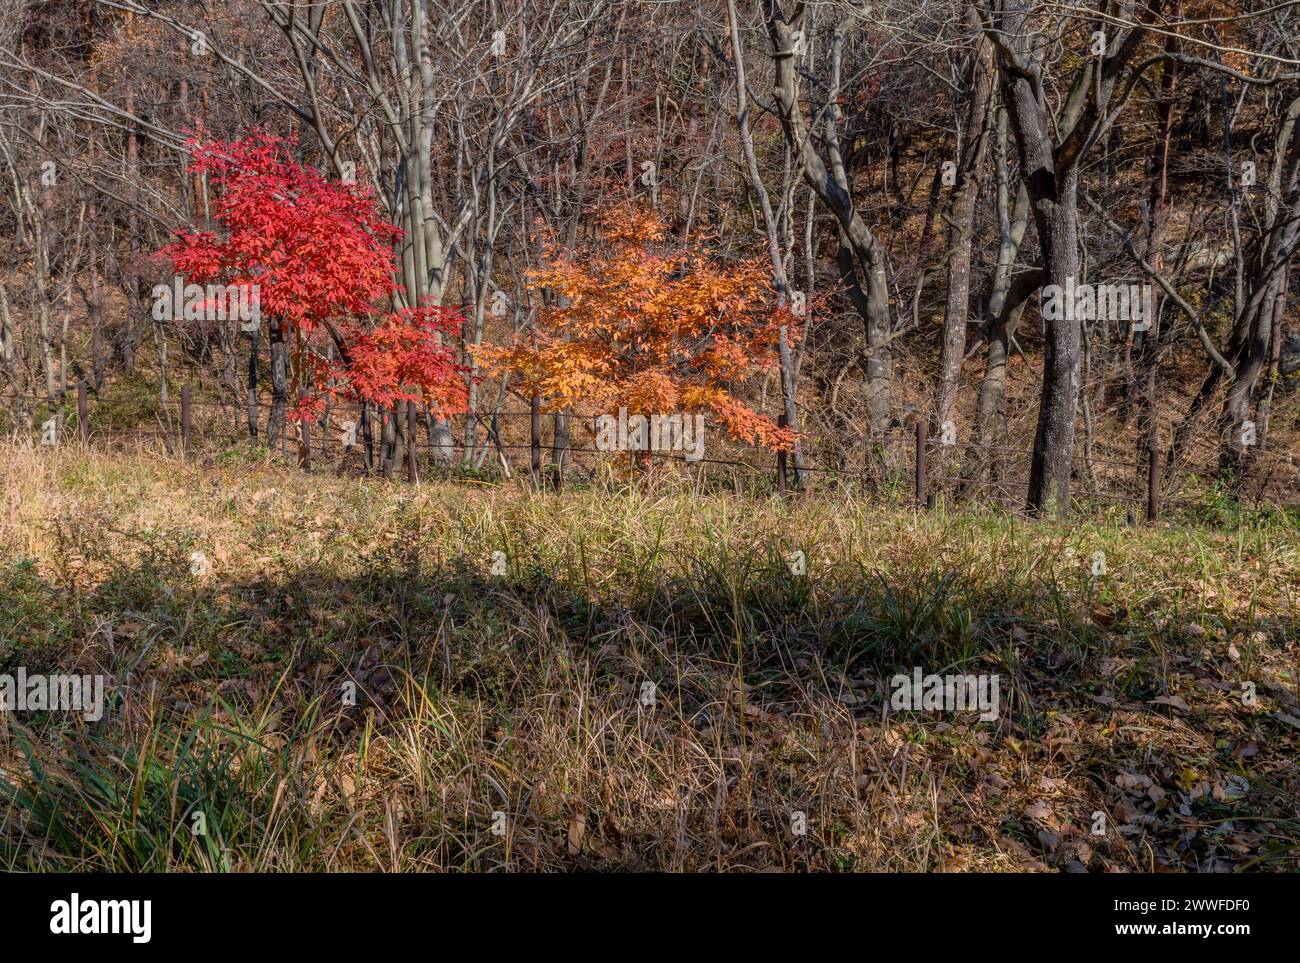 Lumière du soleil projetant la chaleur sur une forêt aux couleurs vives d'automne, en Corée du Sud Banque D'Images